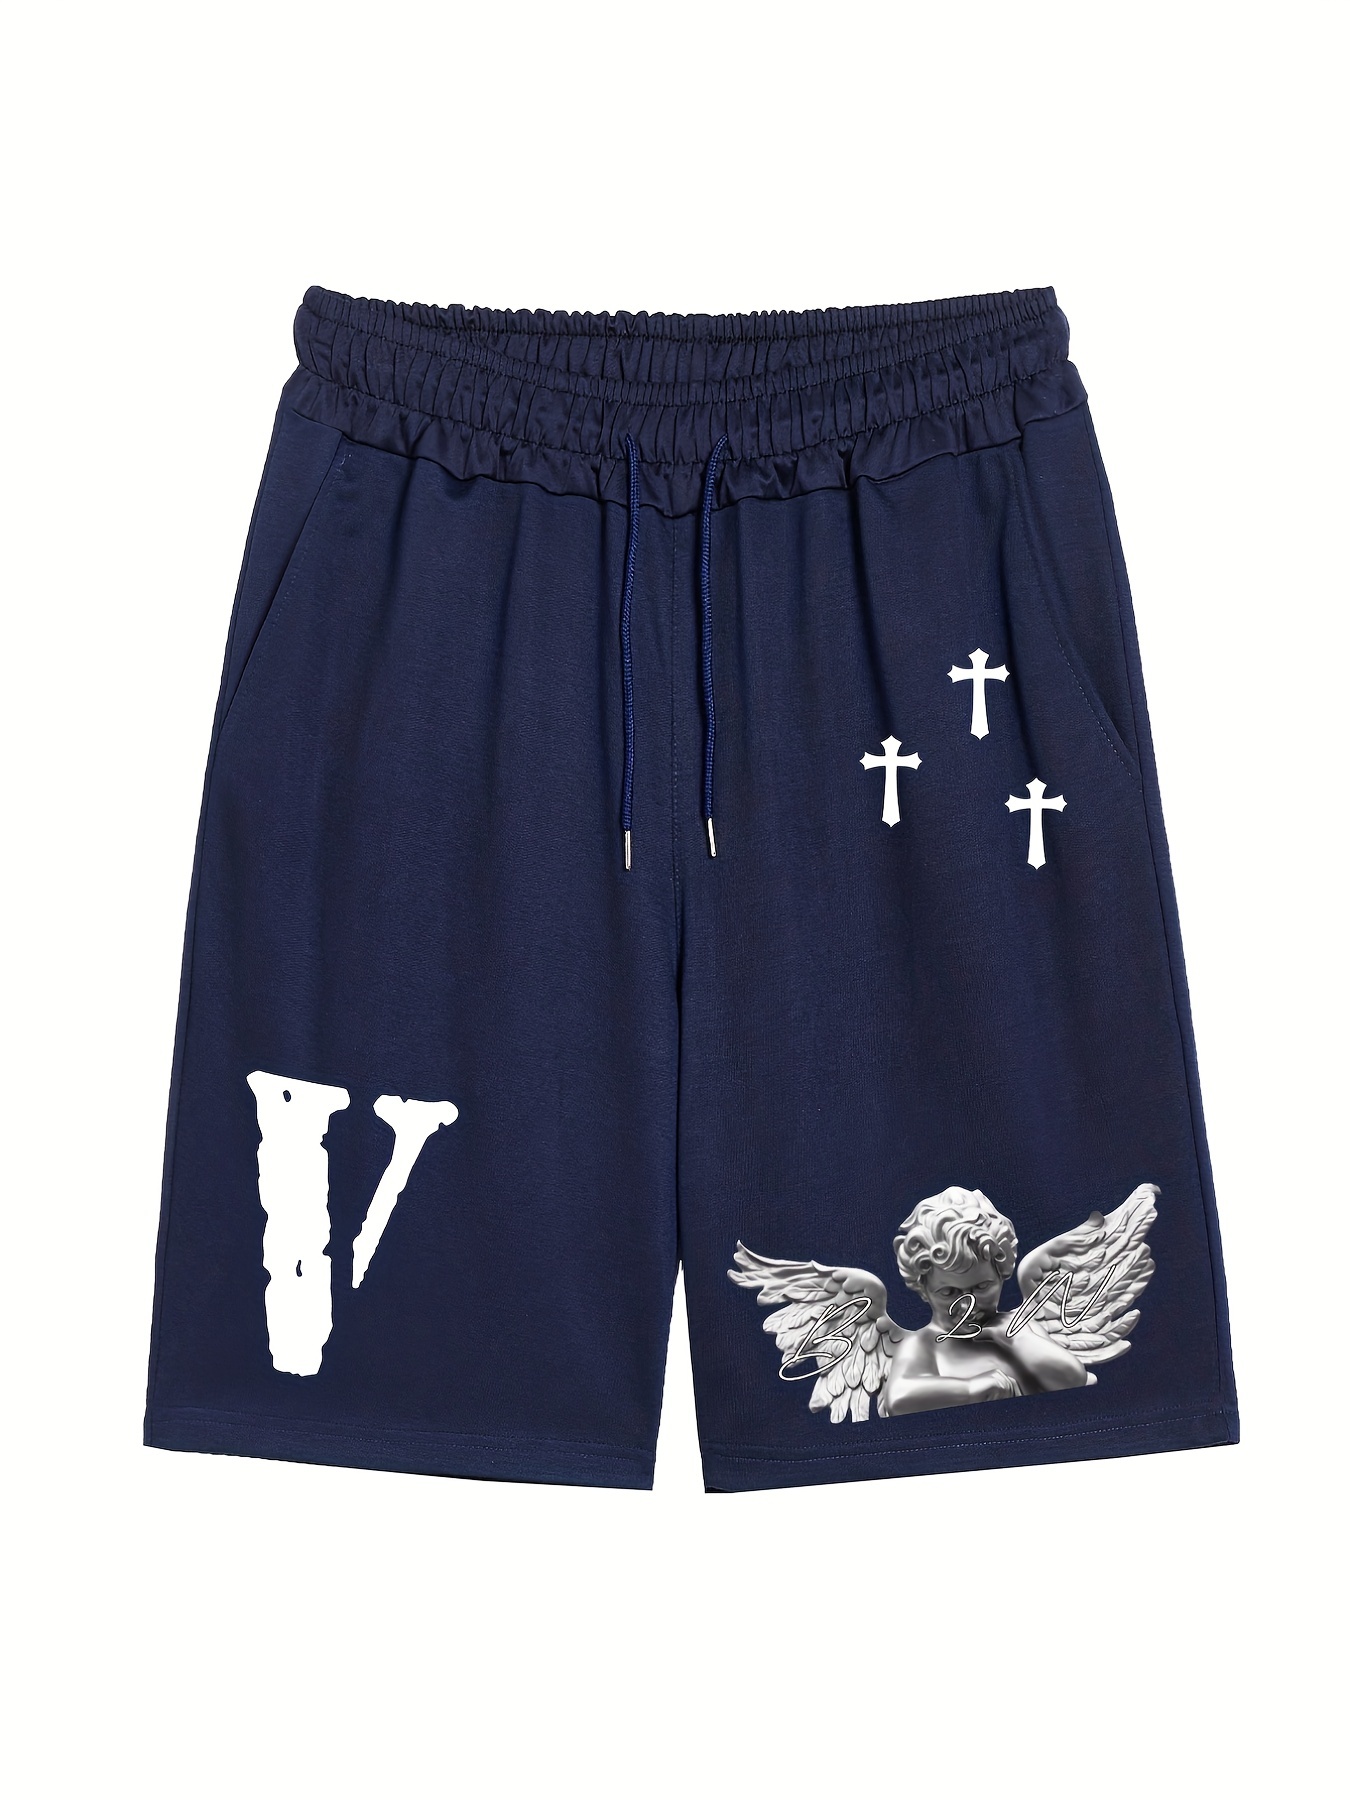 Louis Vuitton Monogram Crepe Shorts Blue. Size 44